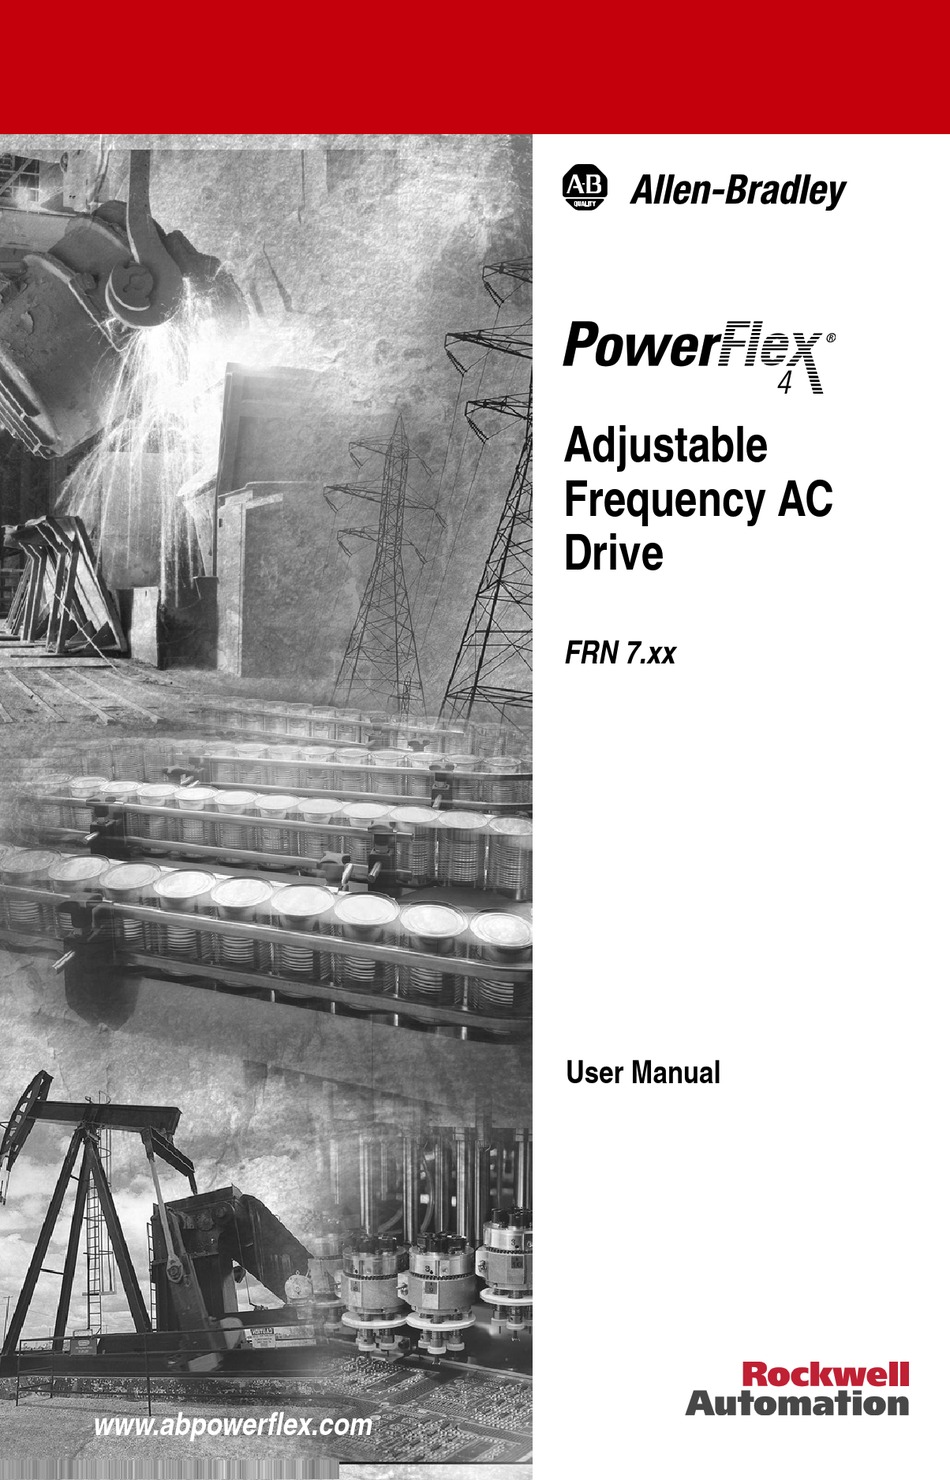 ALLEN-BRADLEY POWERFLEX 4 USER MANUAL Pdf Download | ManualsLib